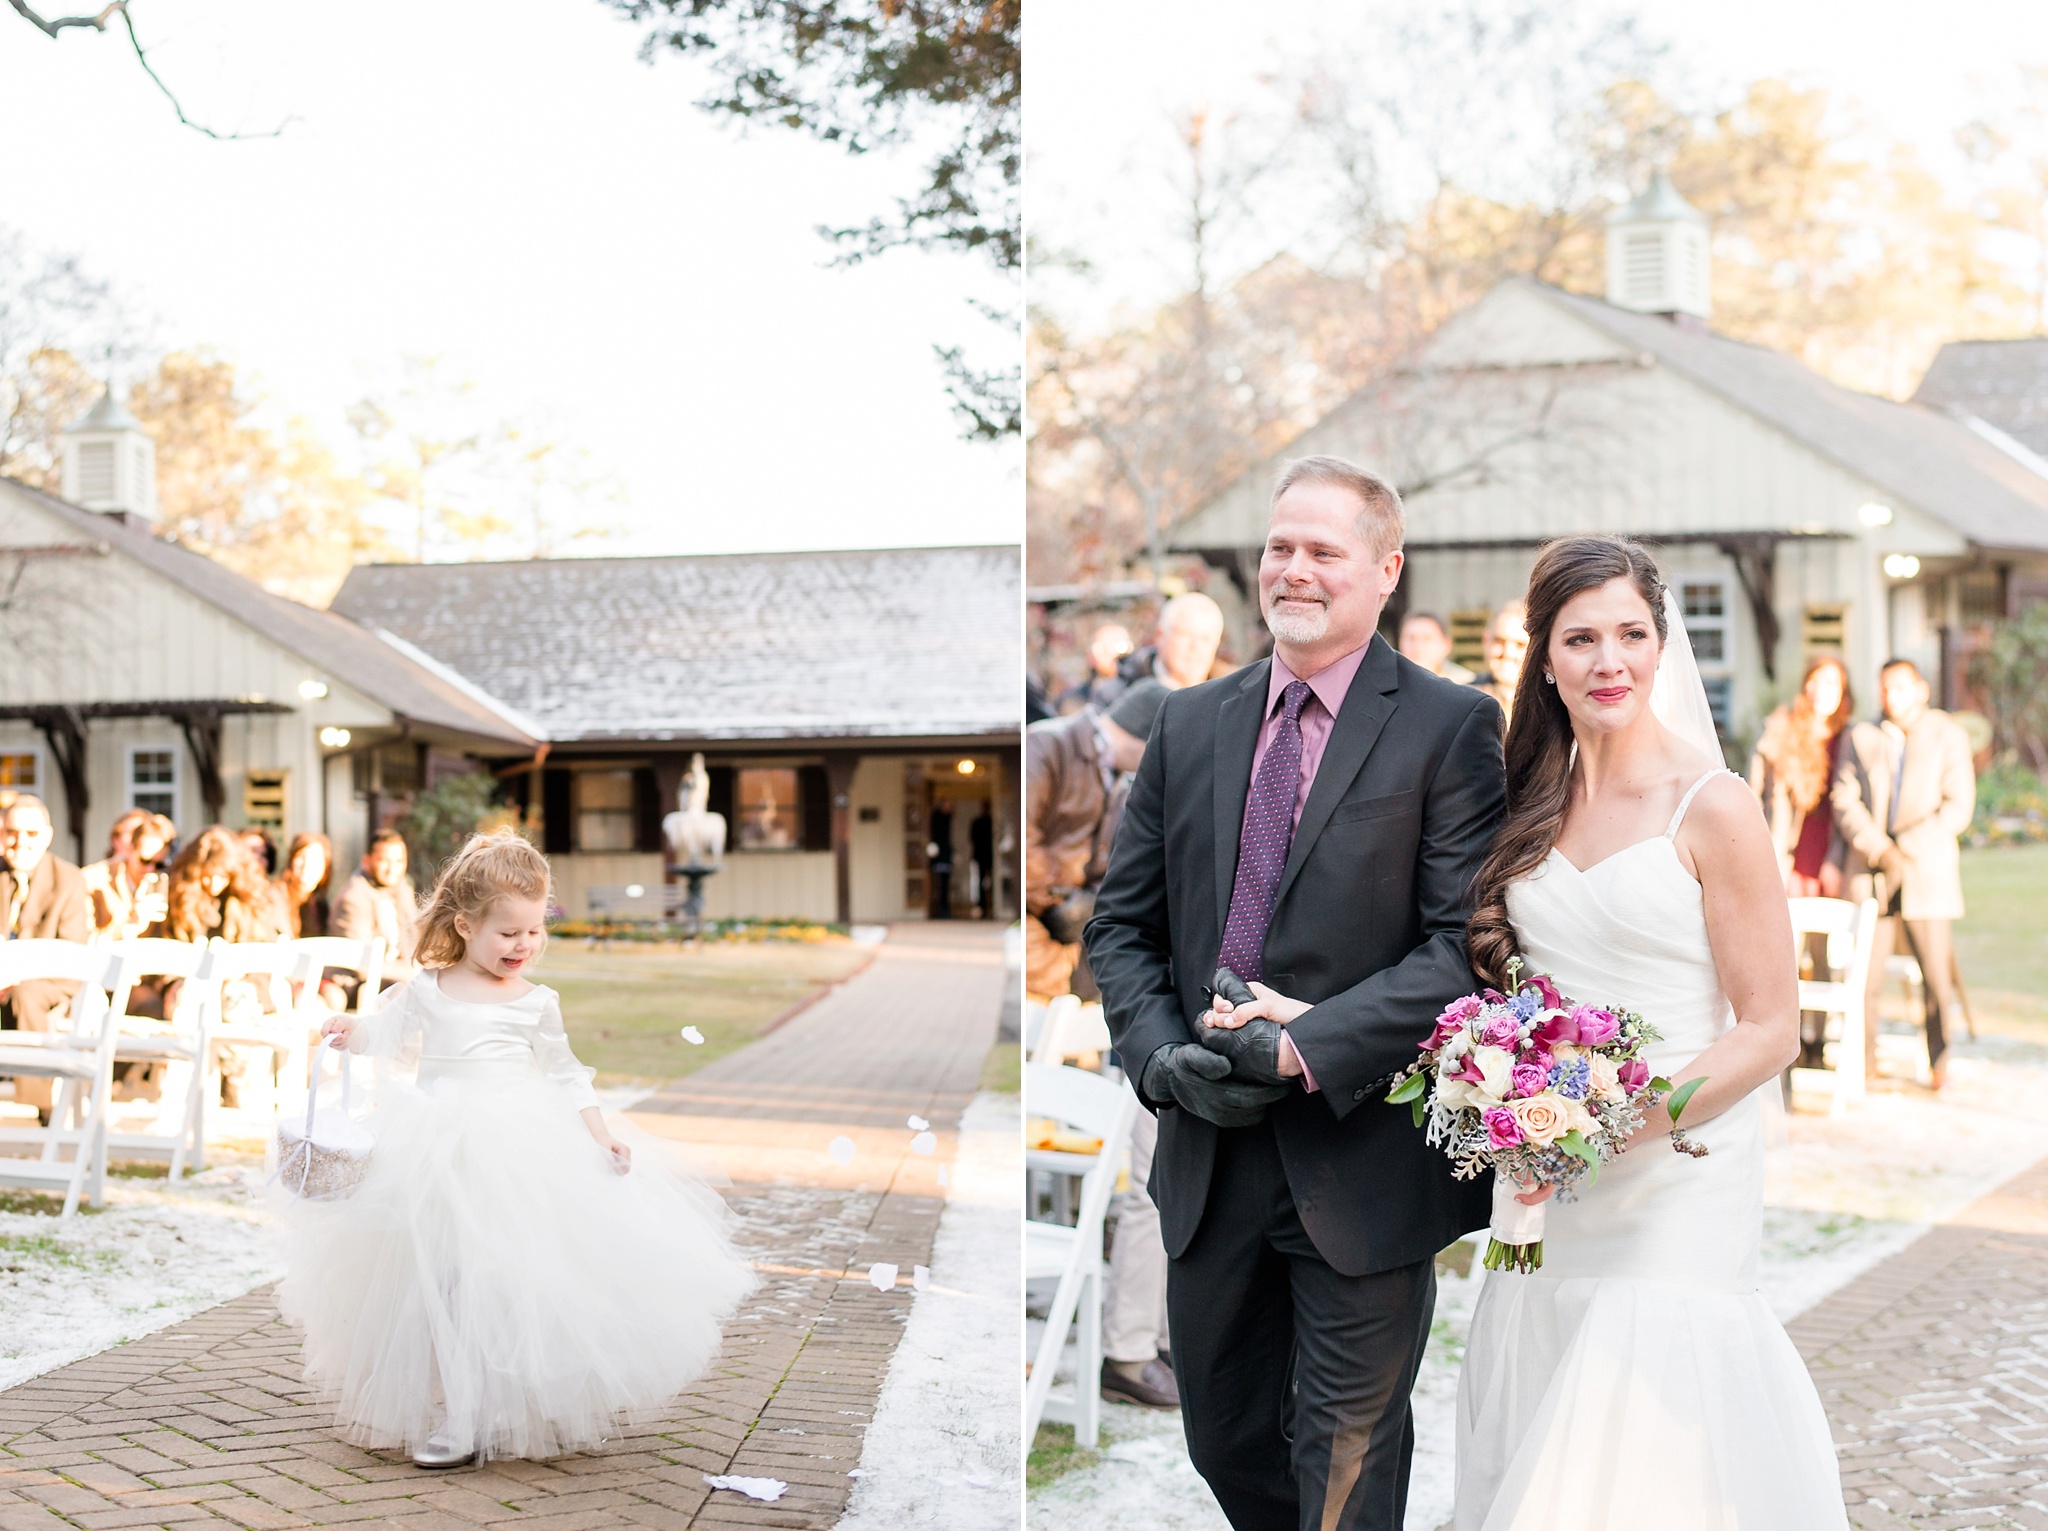 Snowy Winter Aldridge Gardens Wedding | Birmingham Alabama Wedding Photographers_0031.jpg